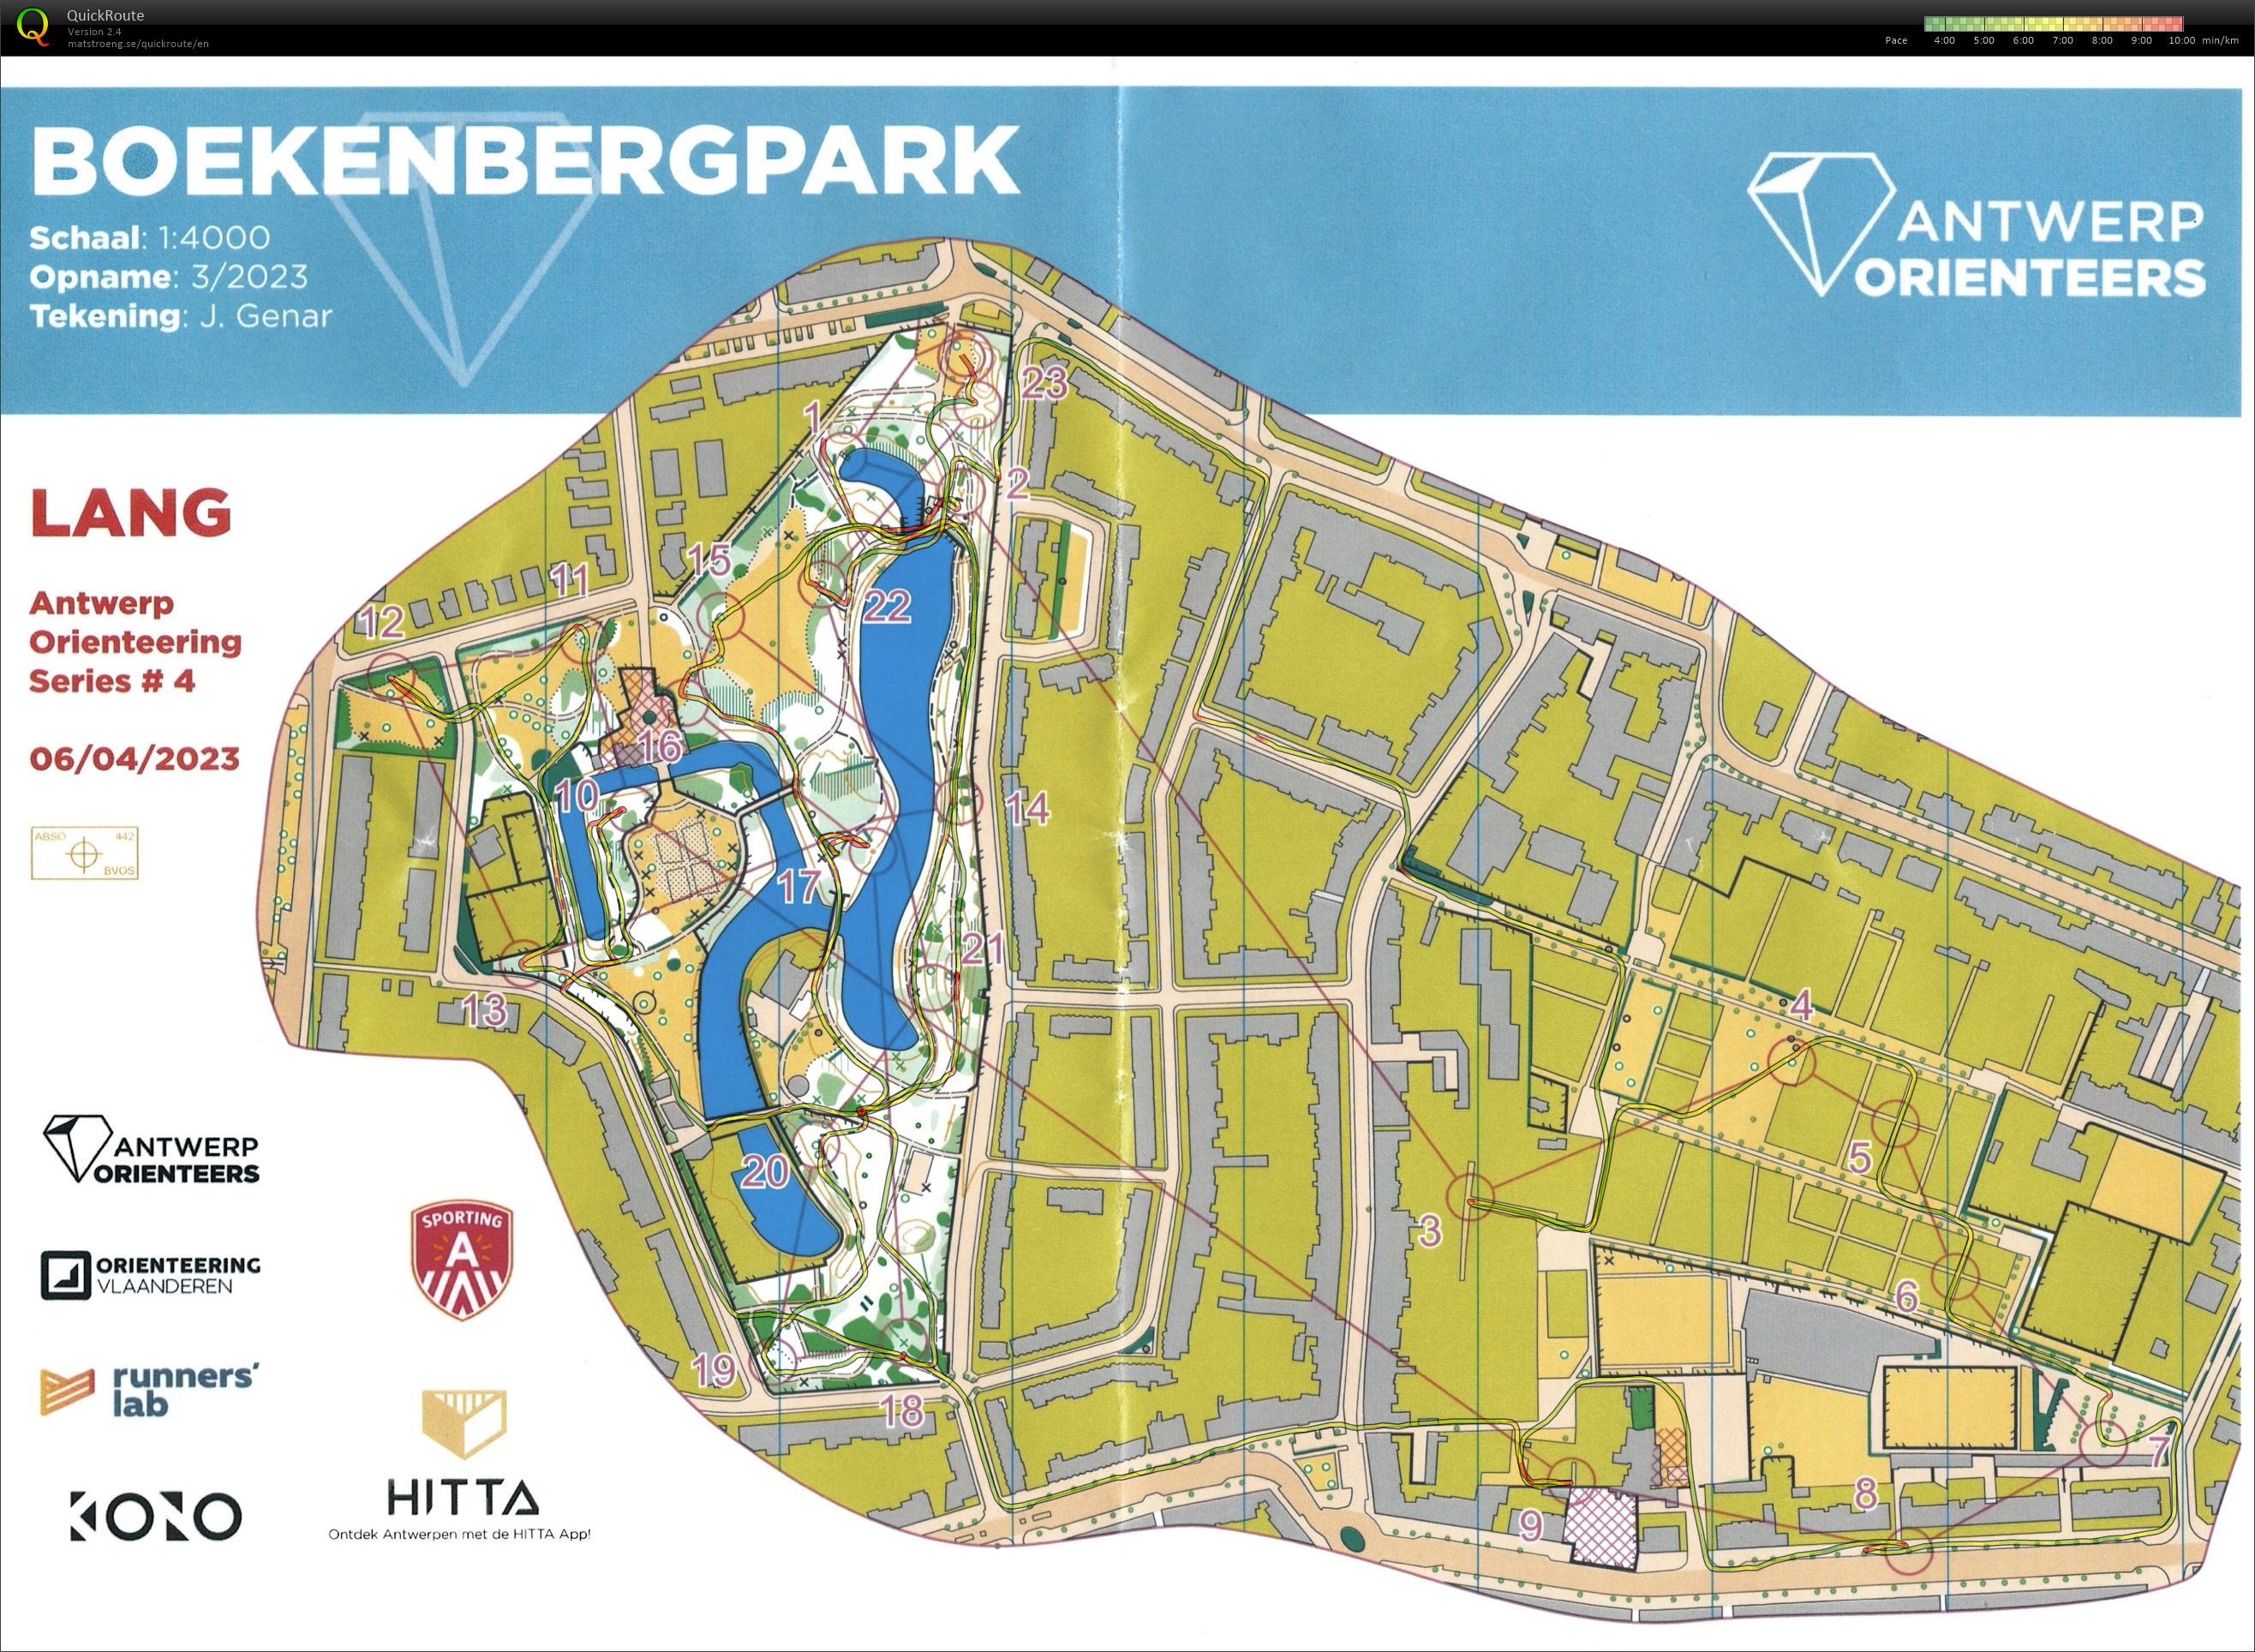 Antwerp Orienteering Series - Boekenbergpark - Lang (09/04/2023)